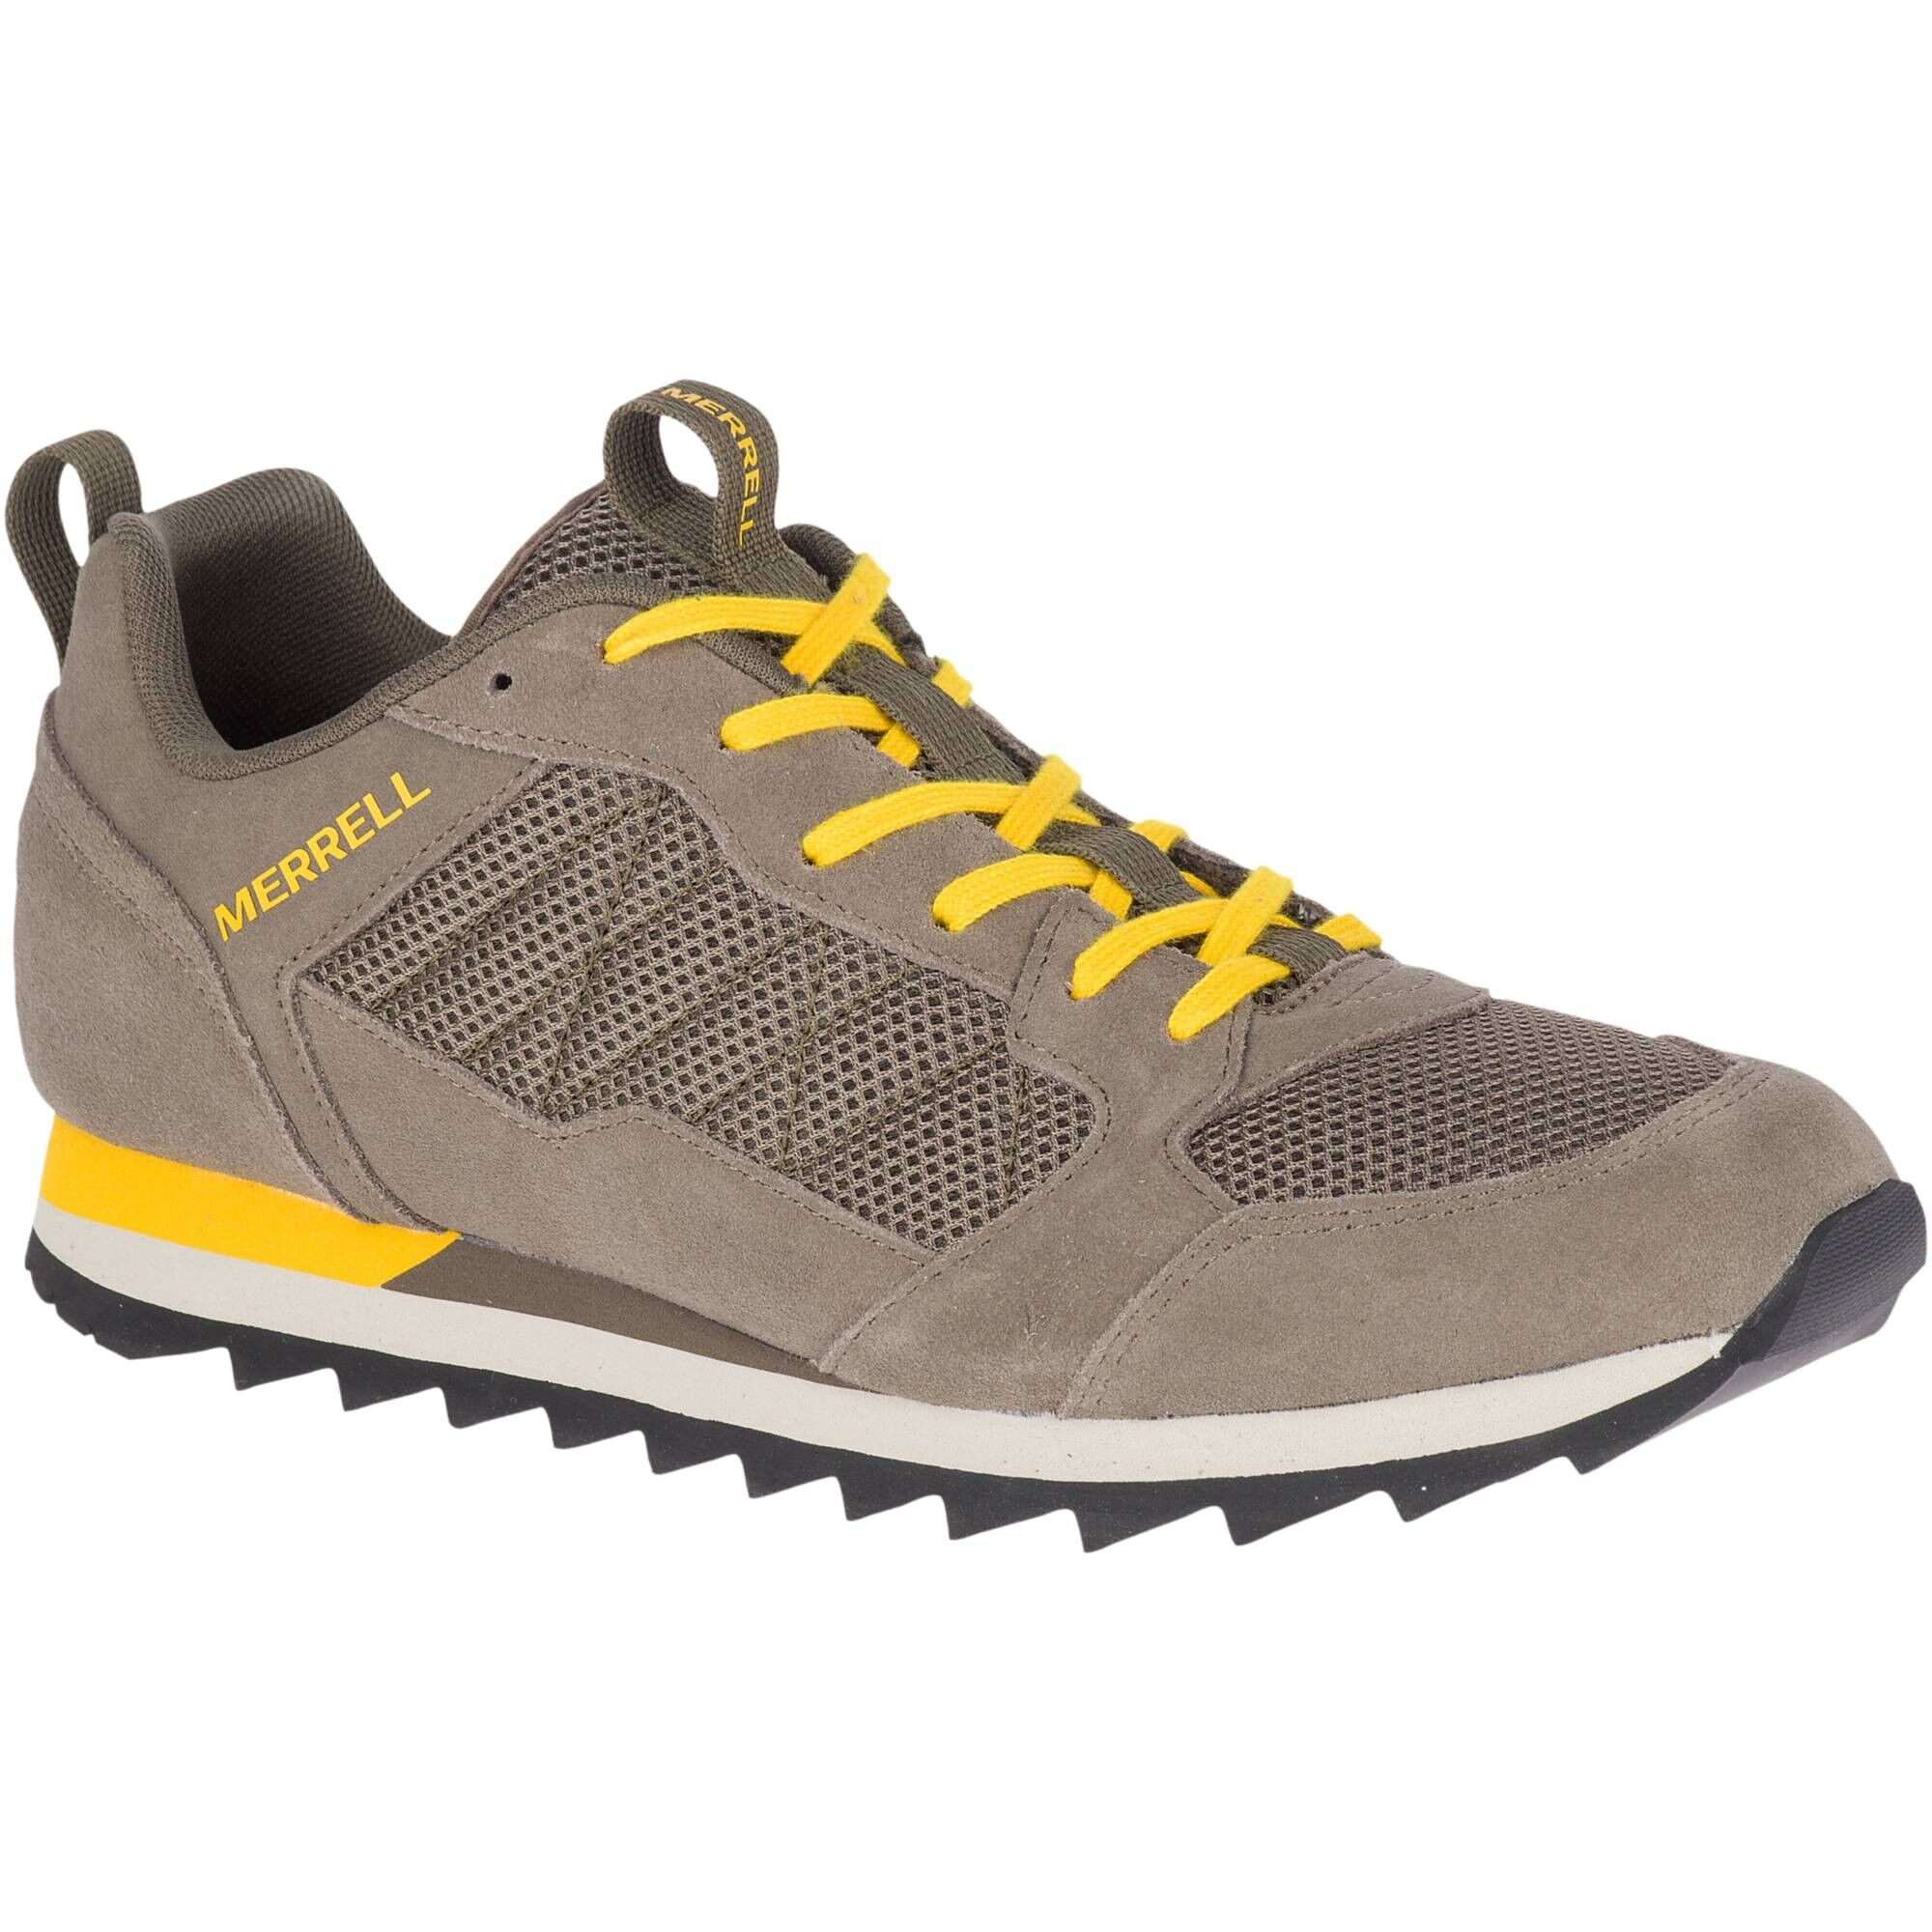 Merrell Alpine Sneaker - Shoes - Men's